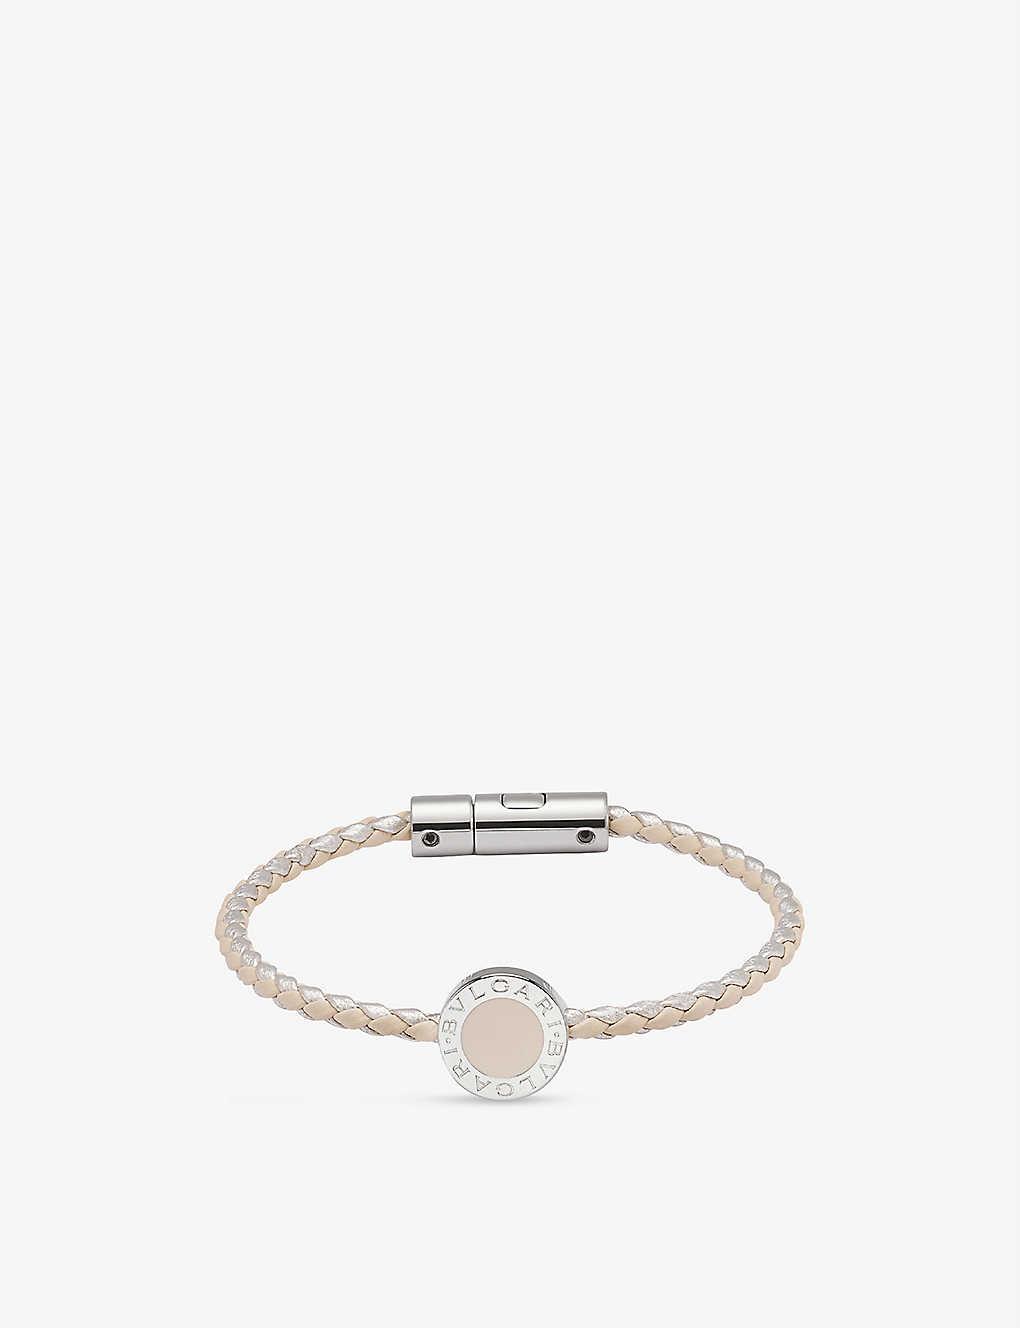 Veronica bracelet – Kama Jewelry